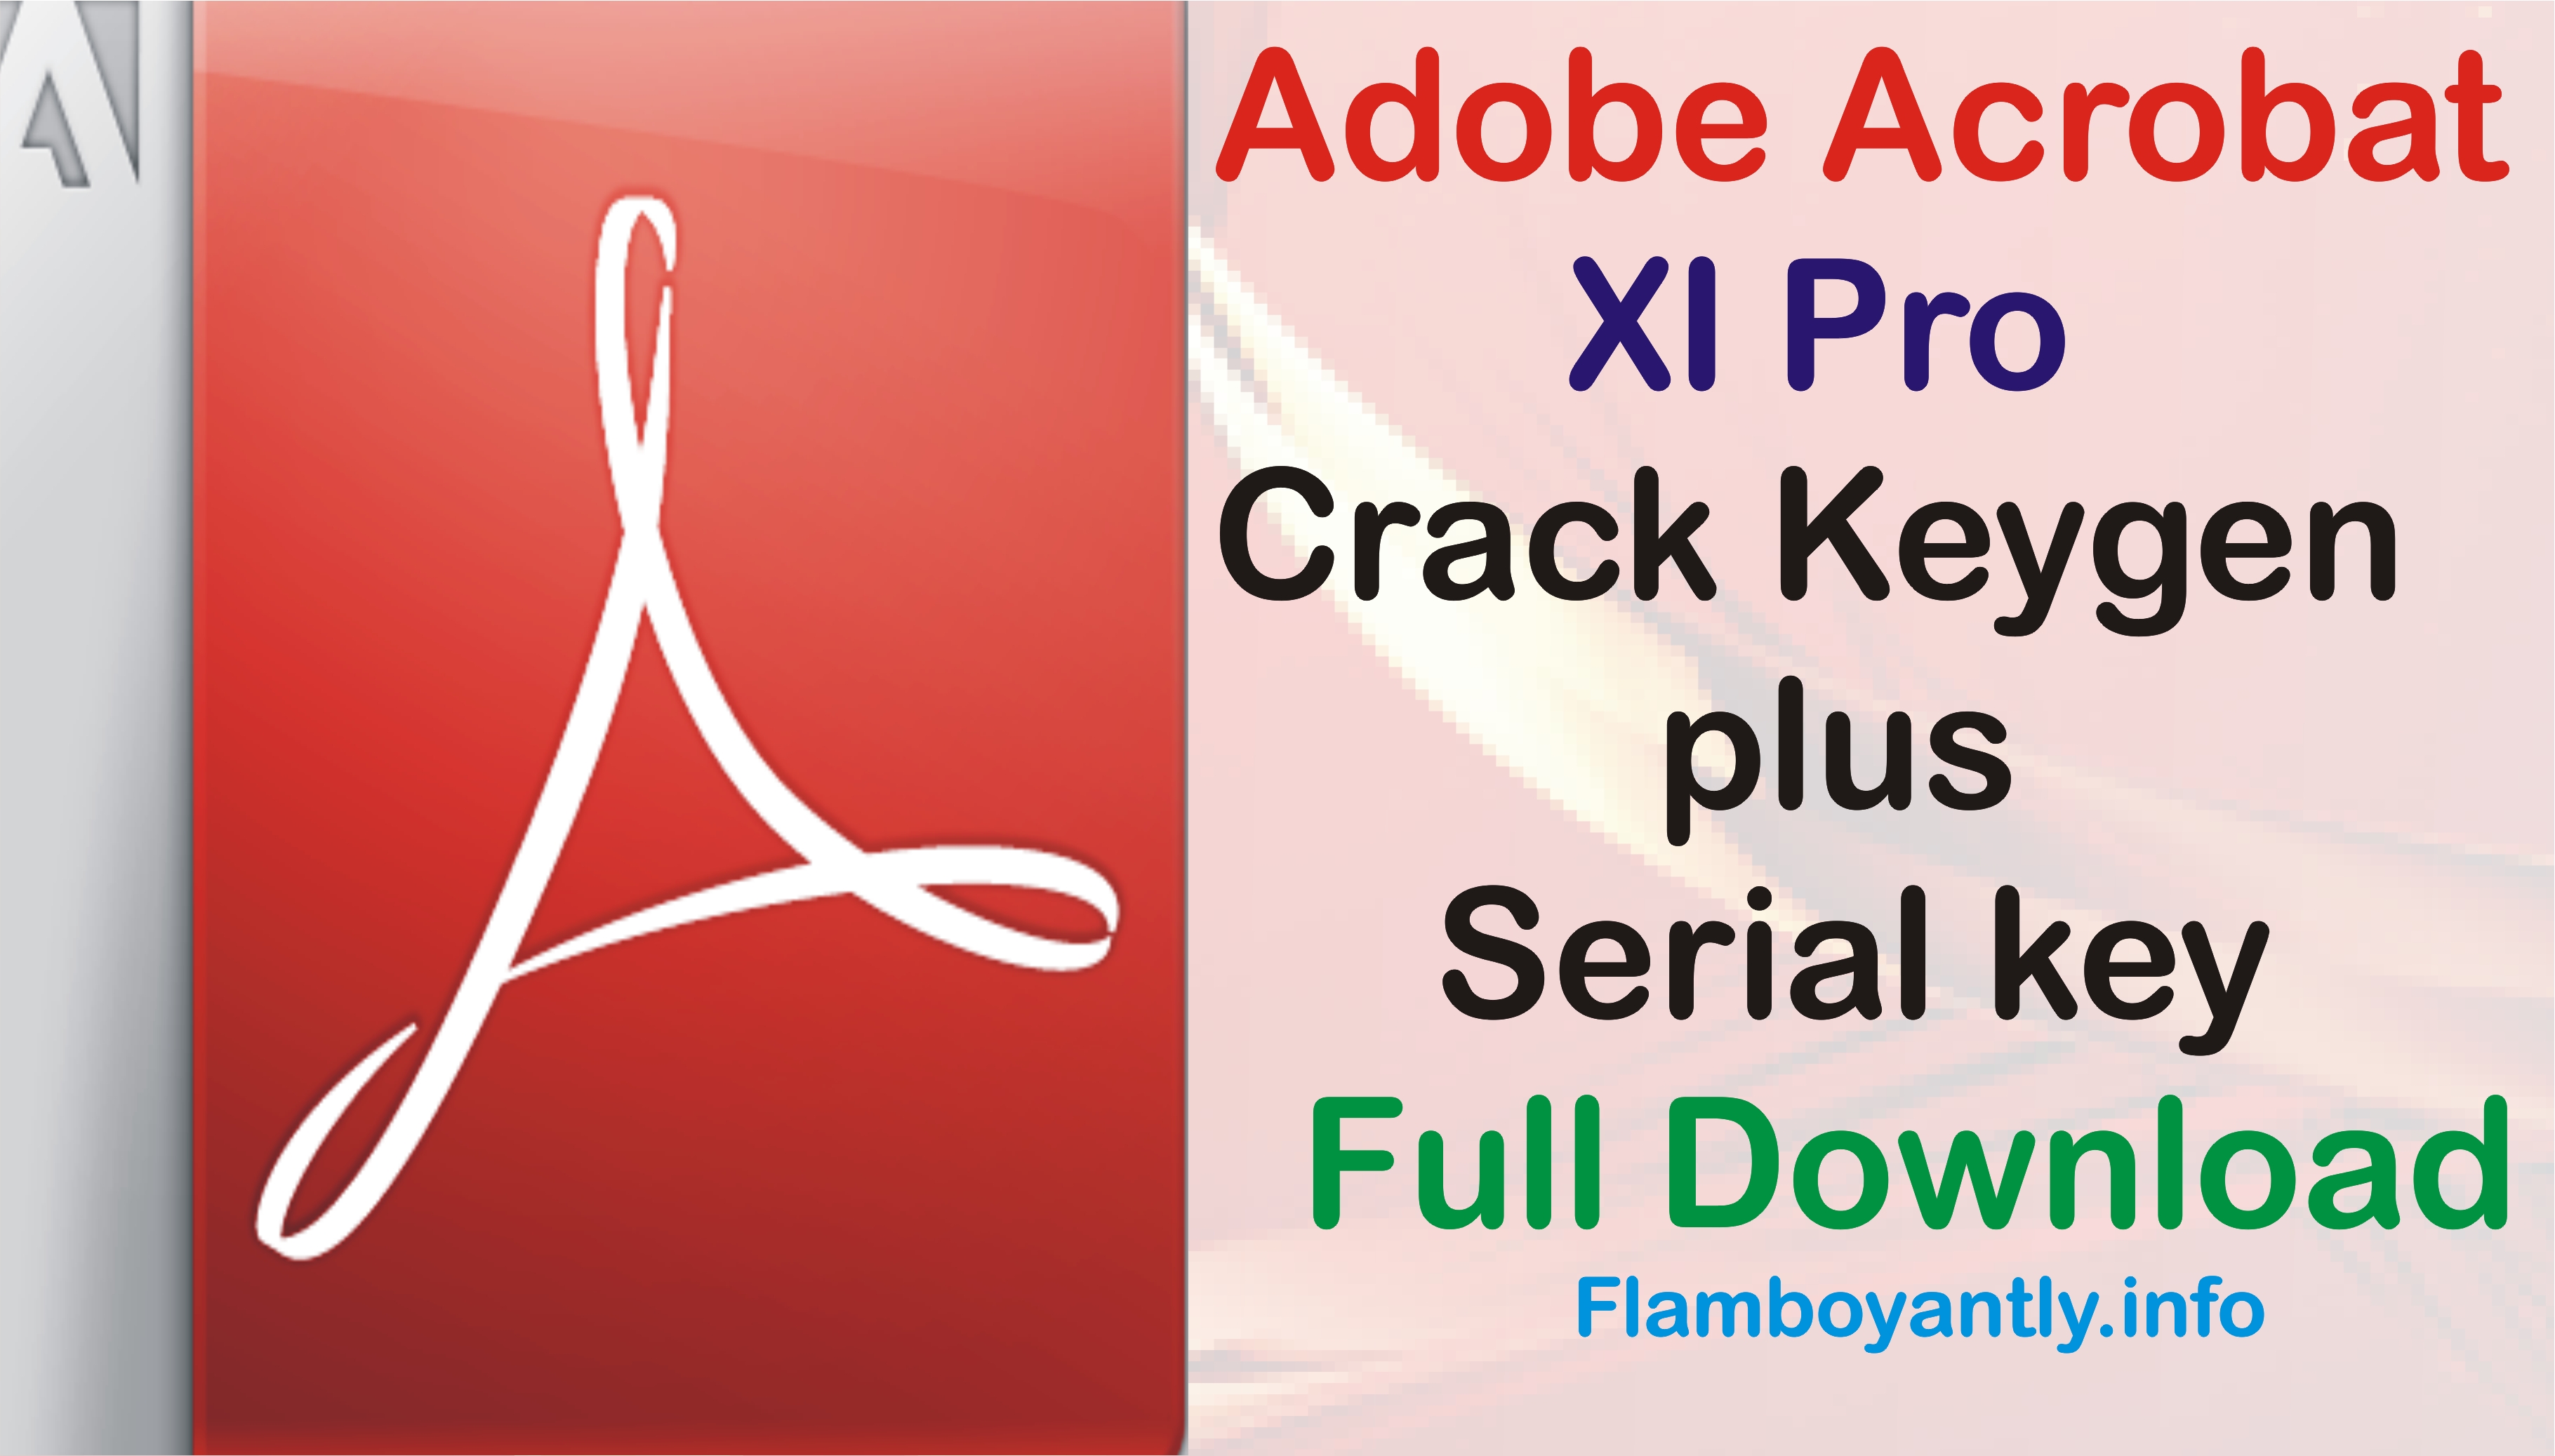 adobe acrobat 9 pro for mac free download